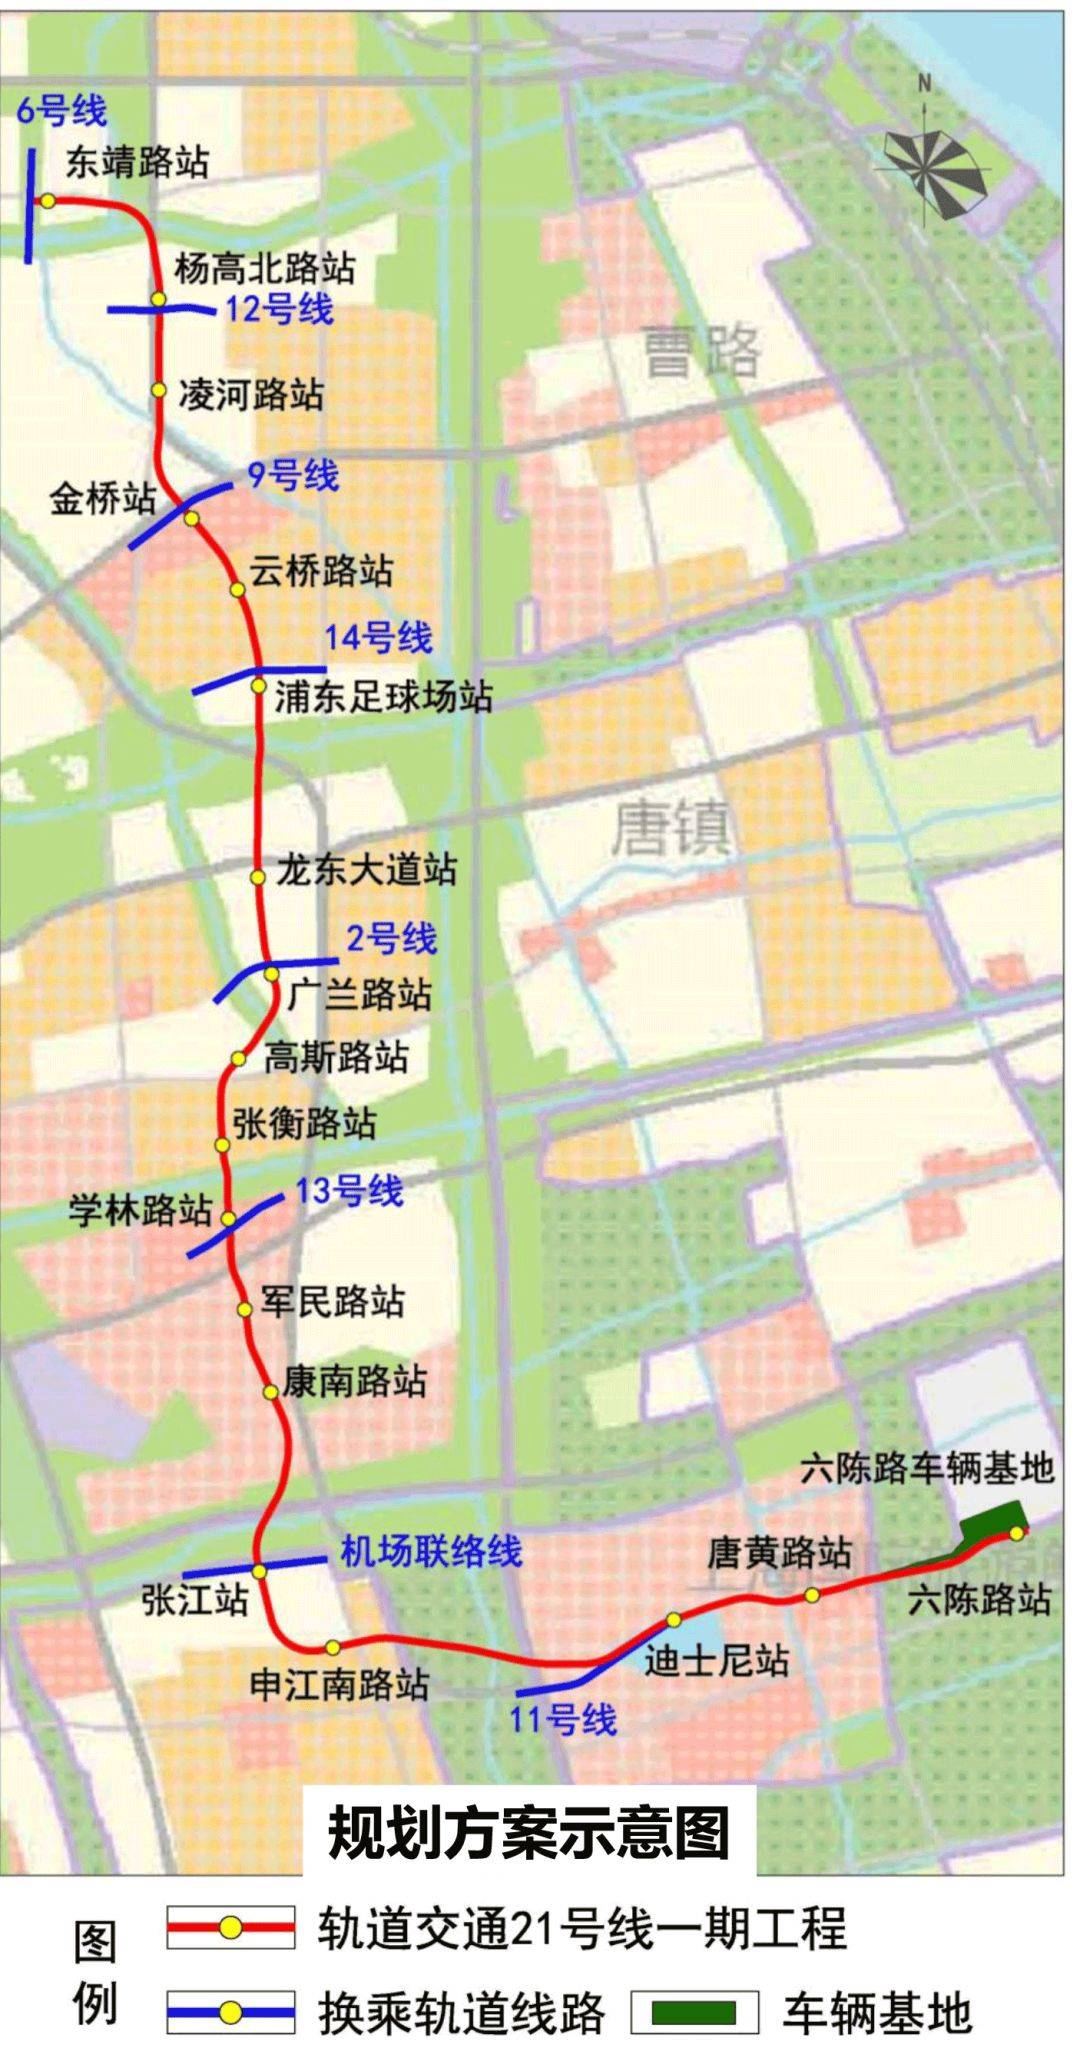 上海地铁21号线要来了!